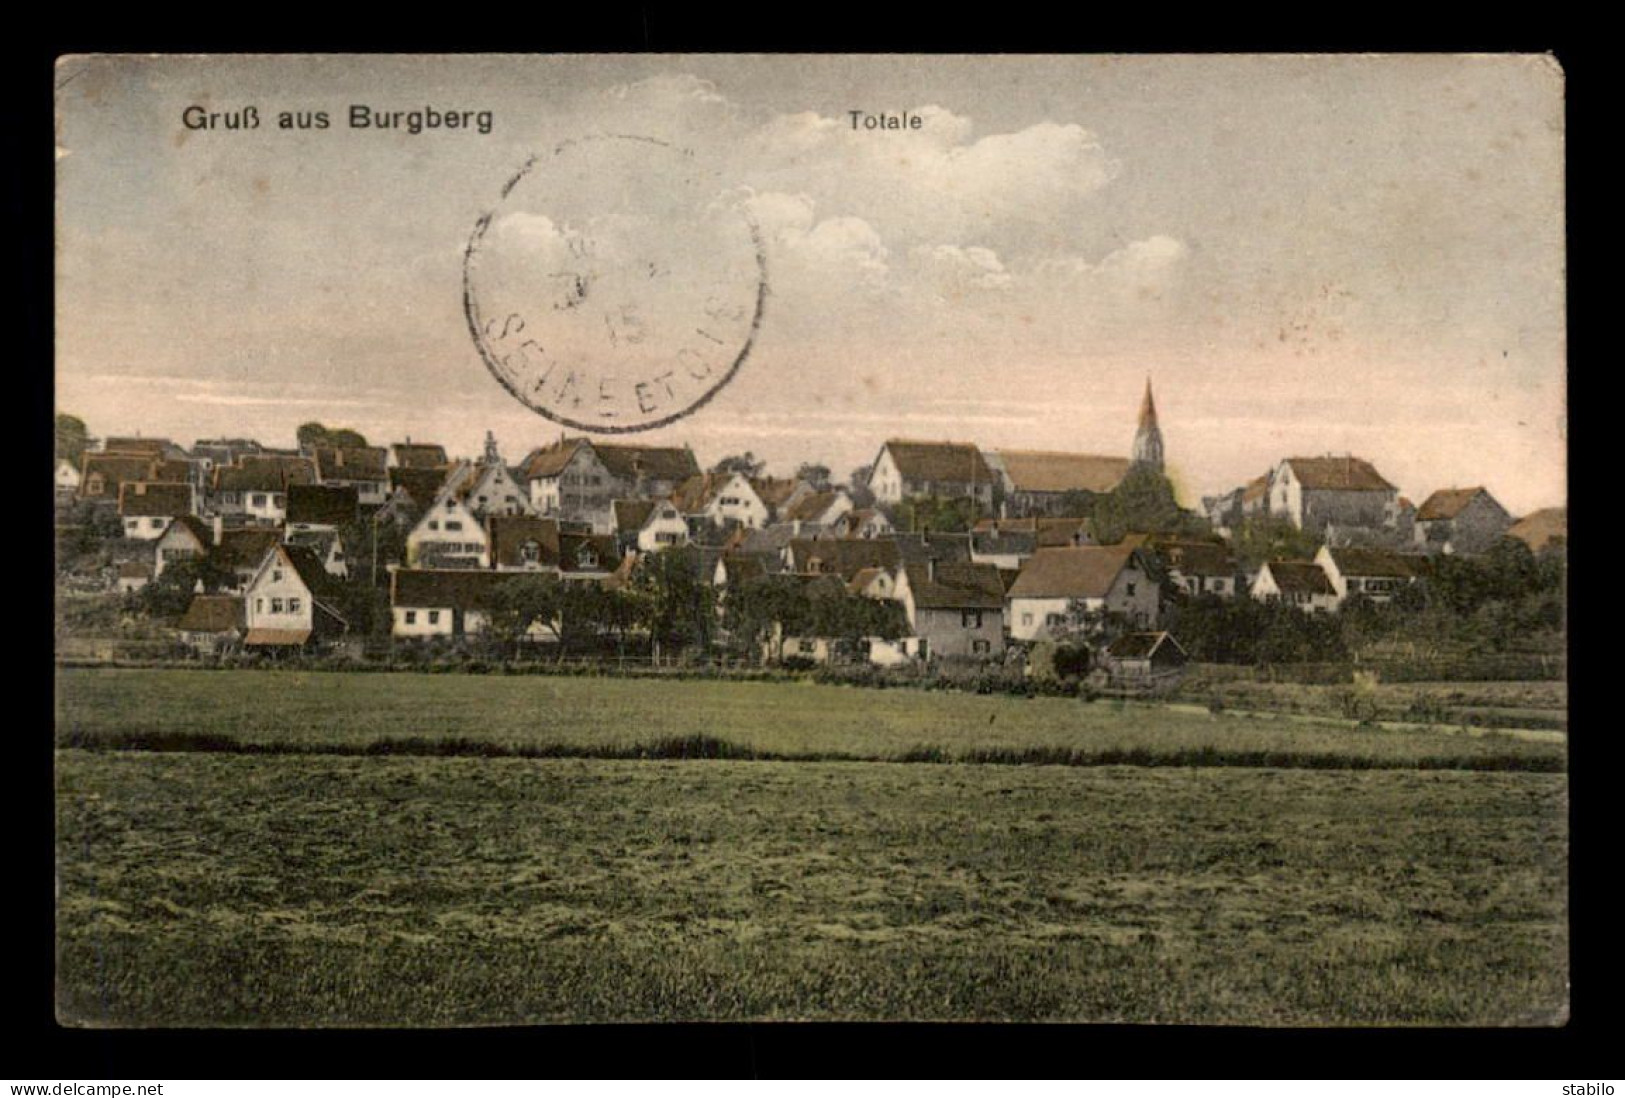 CACHET KIEGS-GEFANGENENLAGER STUTTGART II (ALLEMAGNE) SUR CARTE DE BURGBERG - GUEERE 14/18 - Guerra Del 1914-18